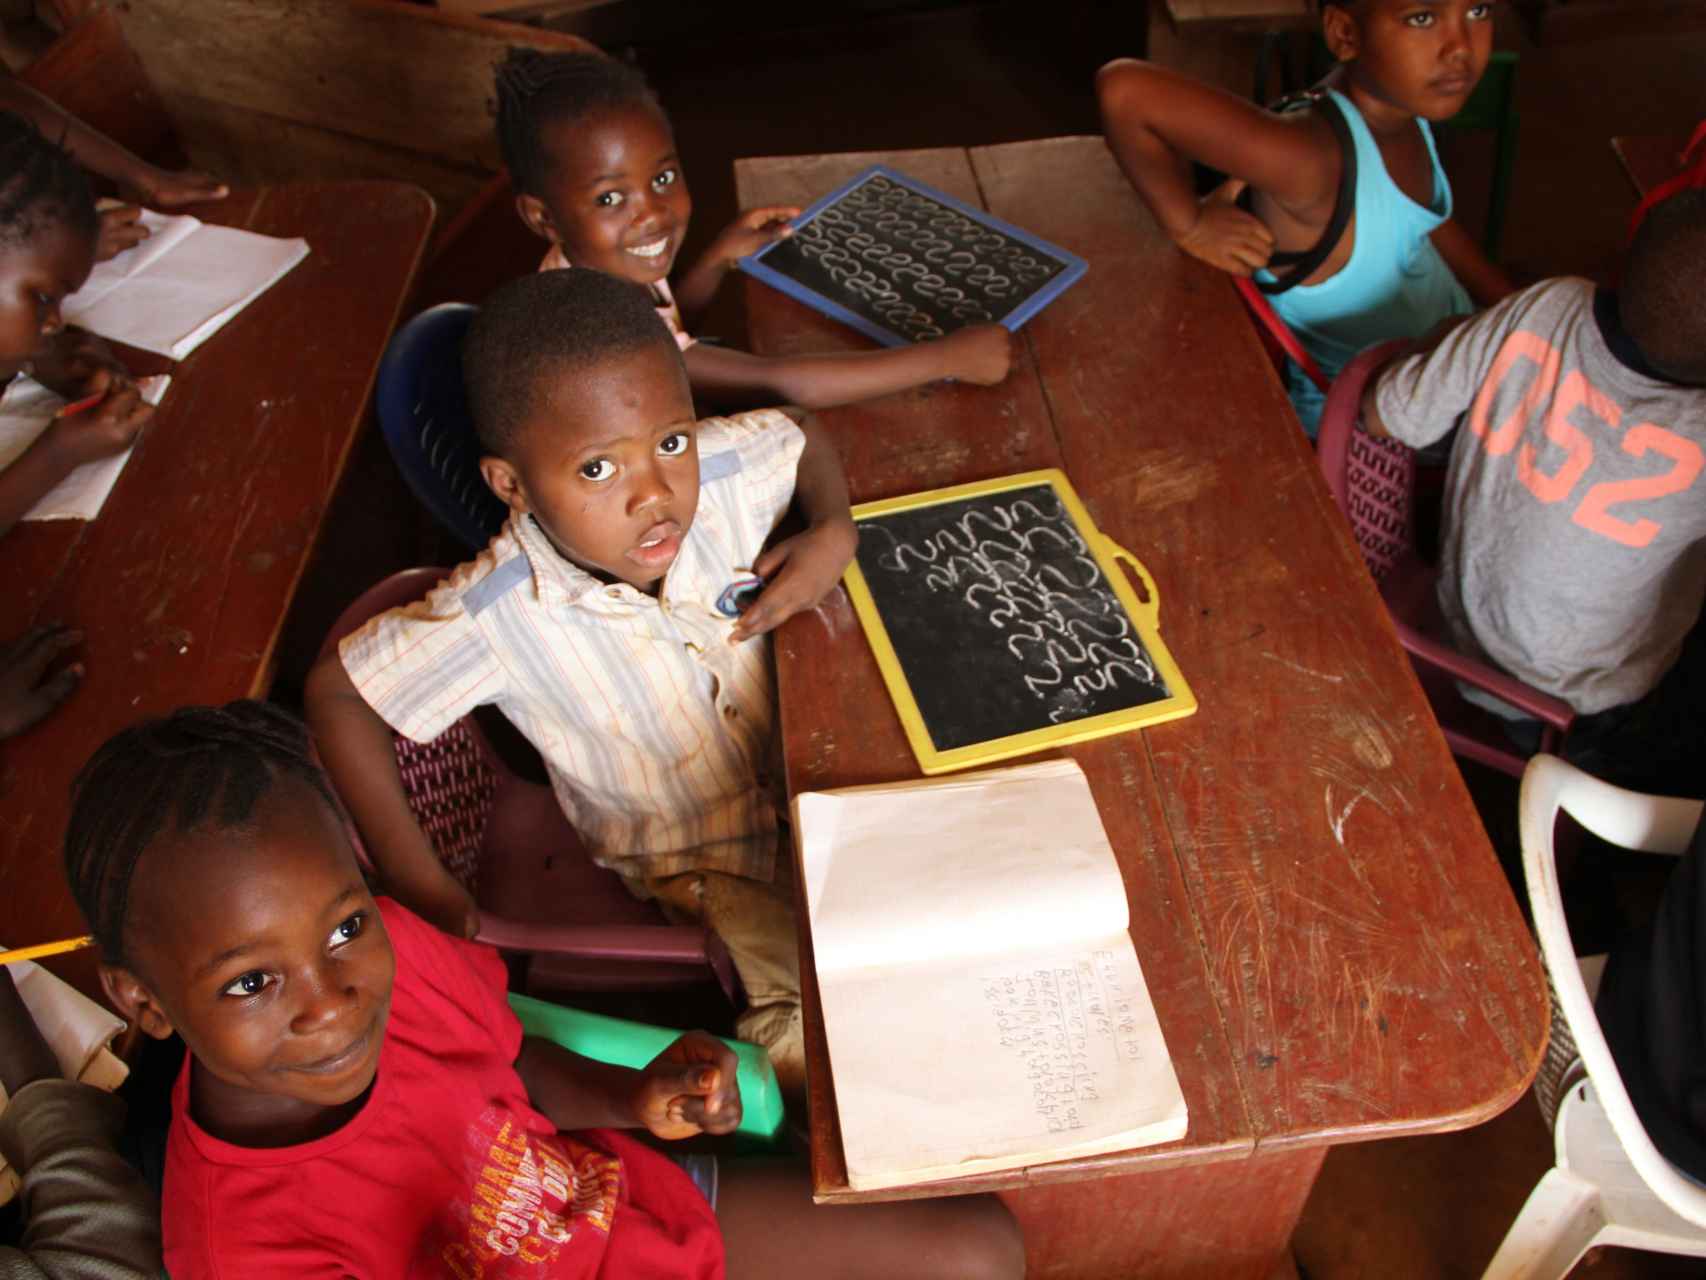 Niños de Sierra Leona que pueden ir a la escuela gracias a la labor humanitaria.